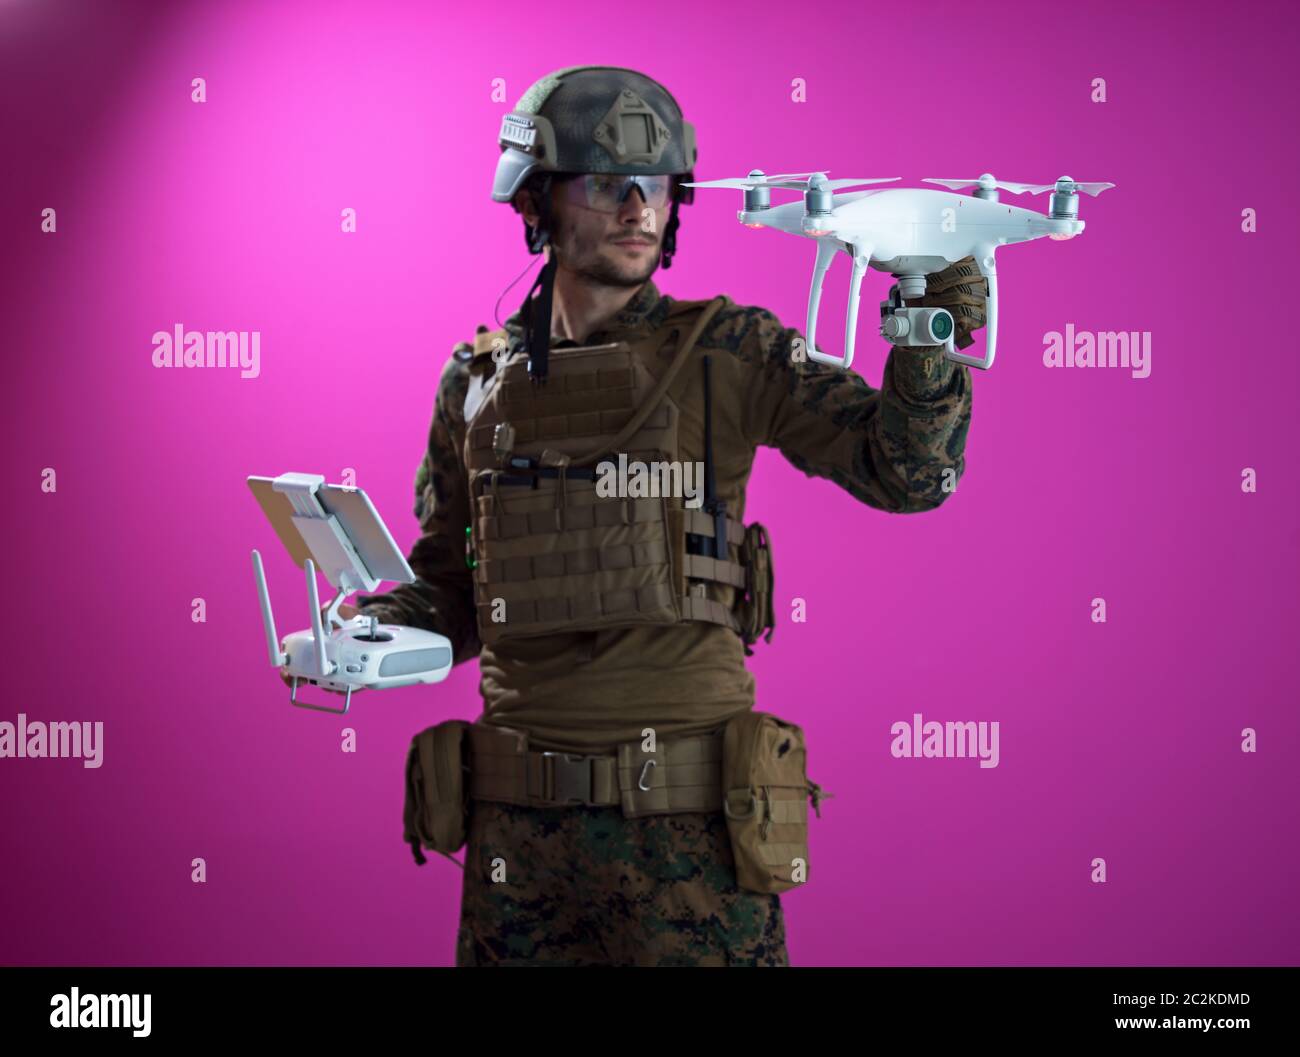 soldier drone technician Stock Photo